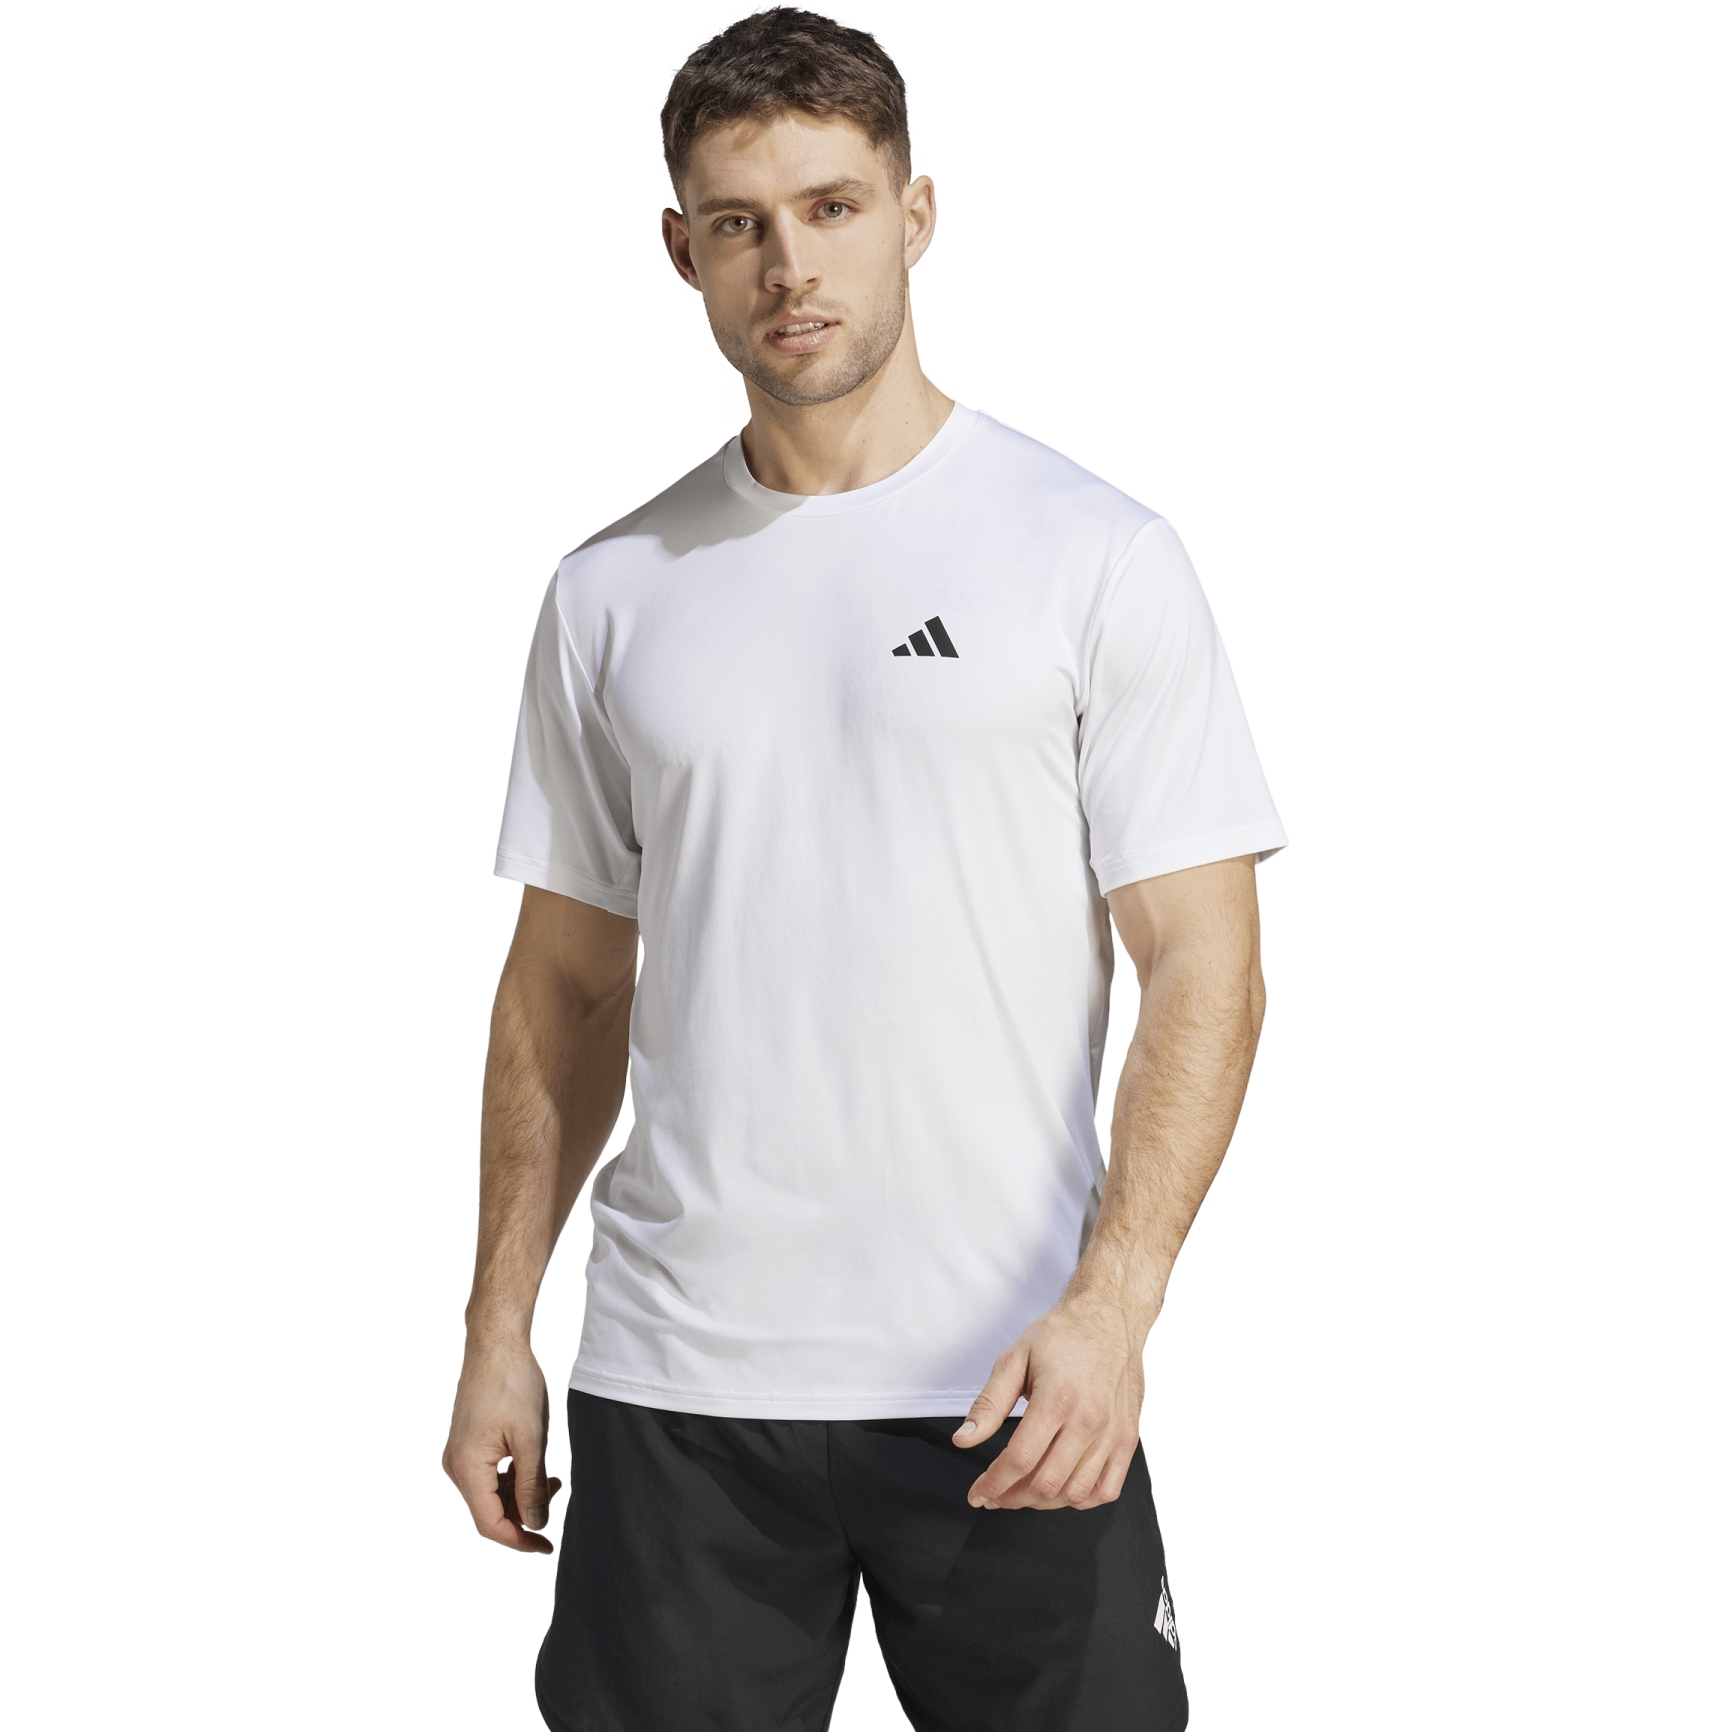 Produktbild von adidas Train Essentials Stretch Training T-Shirt Herren - weiß/schwarz IJ7020